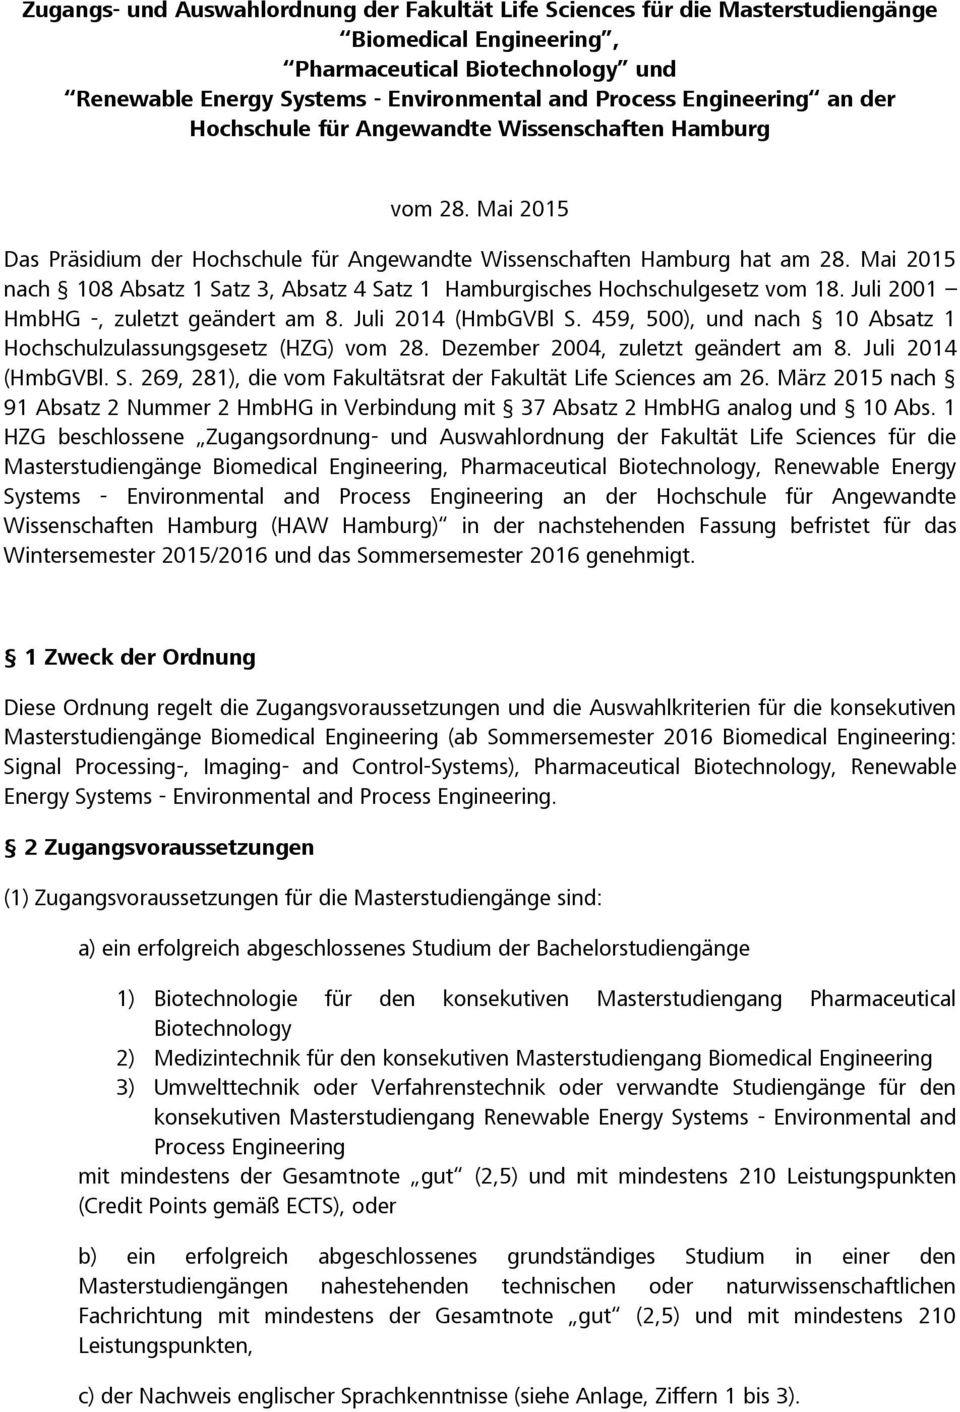 Mai 2015 nach 108 Absatz 1 Satz 3, Absatz 4 Satz 1 Hamburgisches Hochschulgesetz vom 18. Juli 2001 HmbHG -, zuletzt geändert am 8. Juli 2014 (HmbGVBl S.